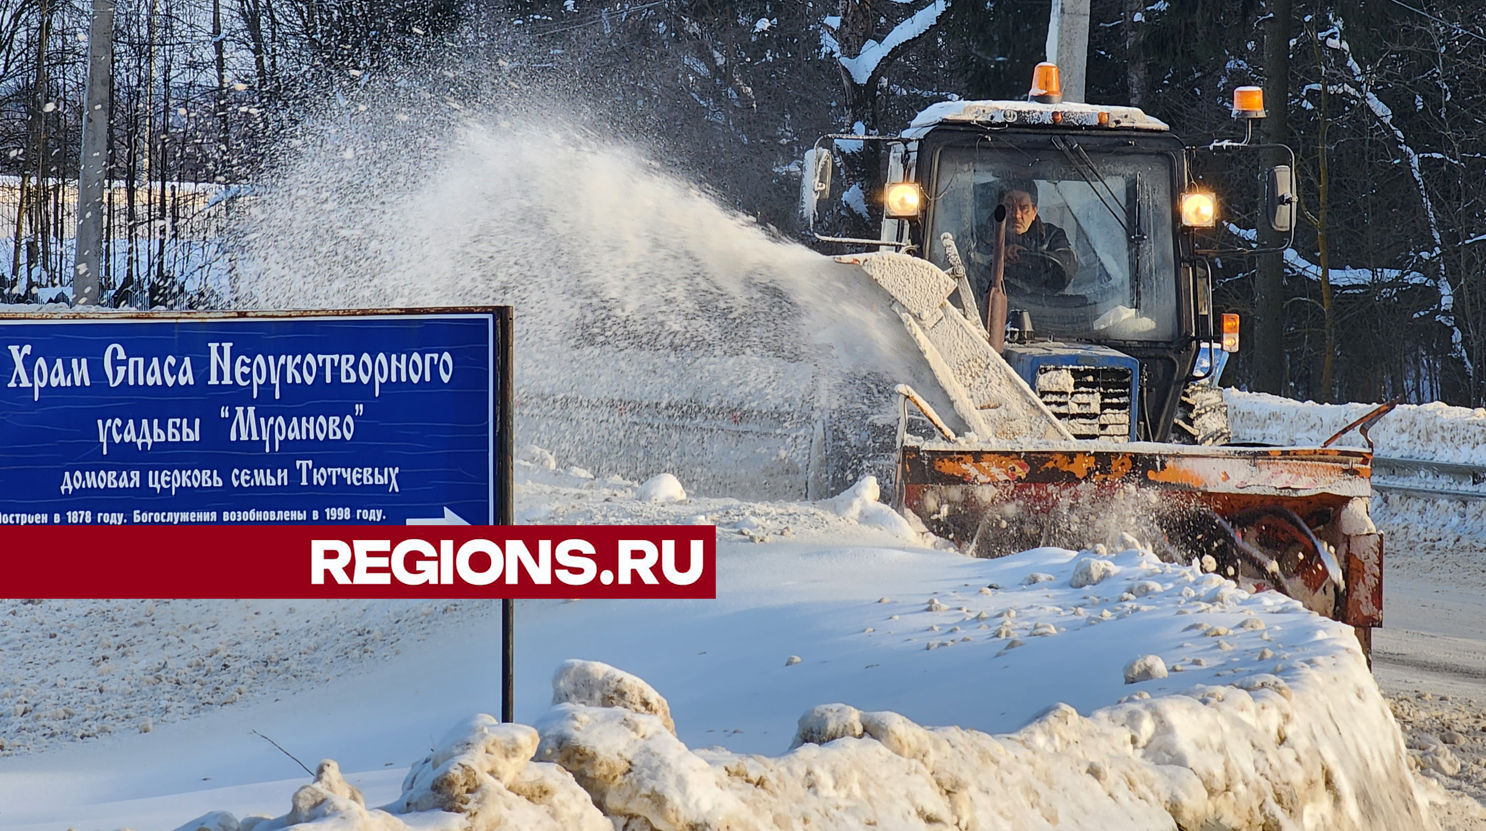 Коммунальщики очистили от снега и наледи обочину дороги в деревне Мураново